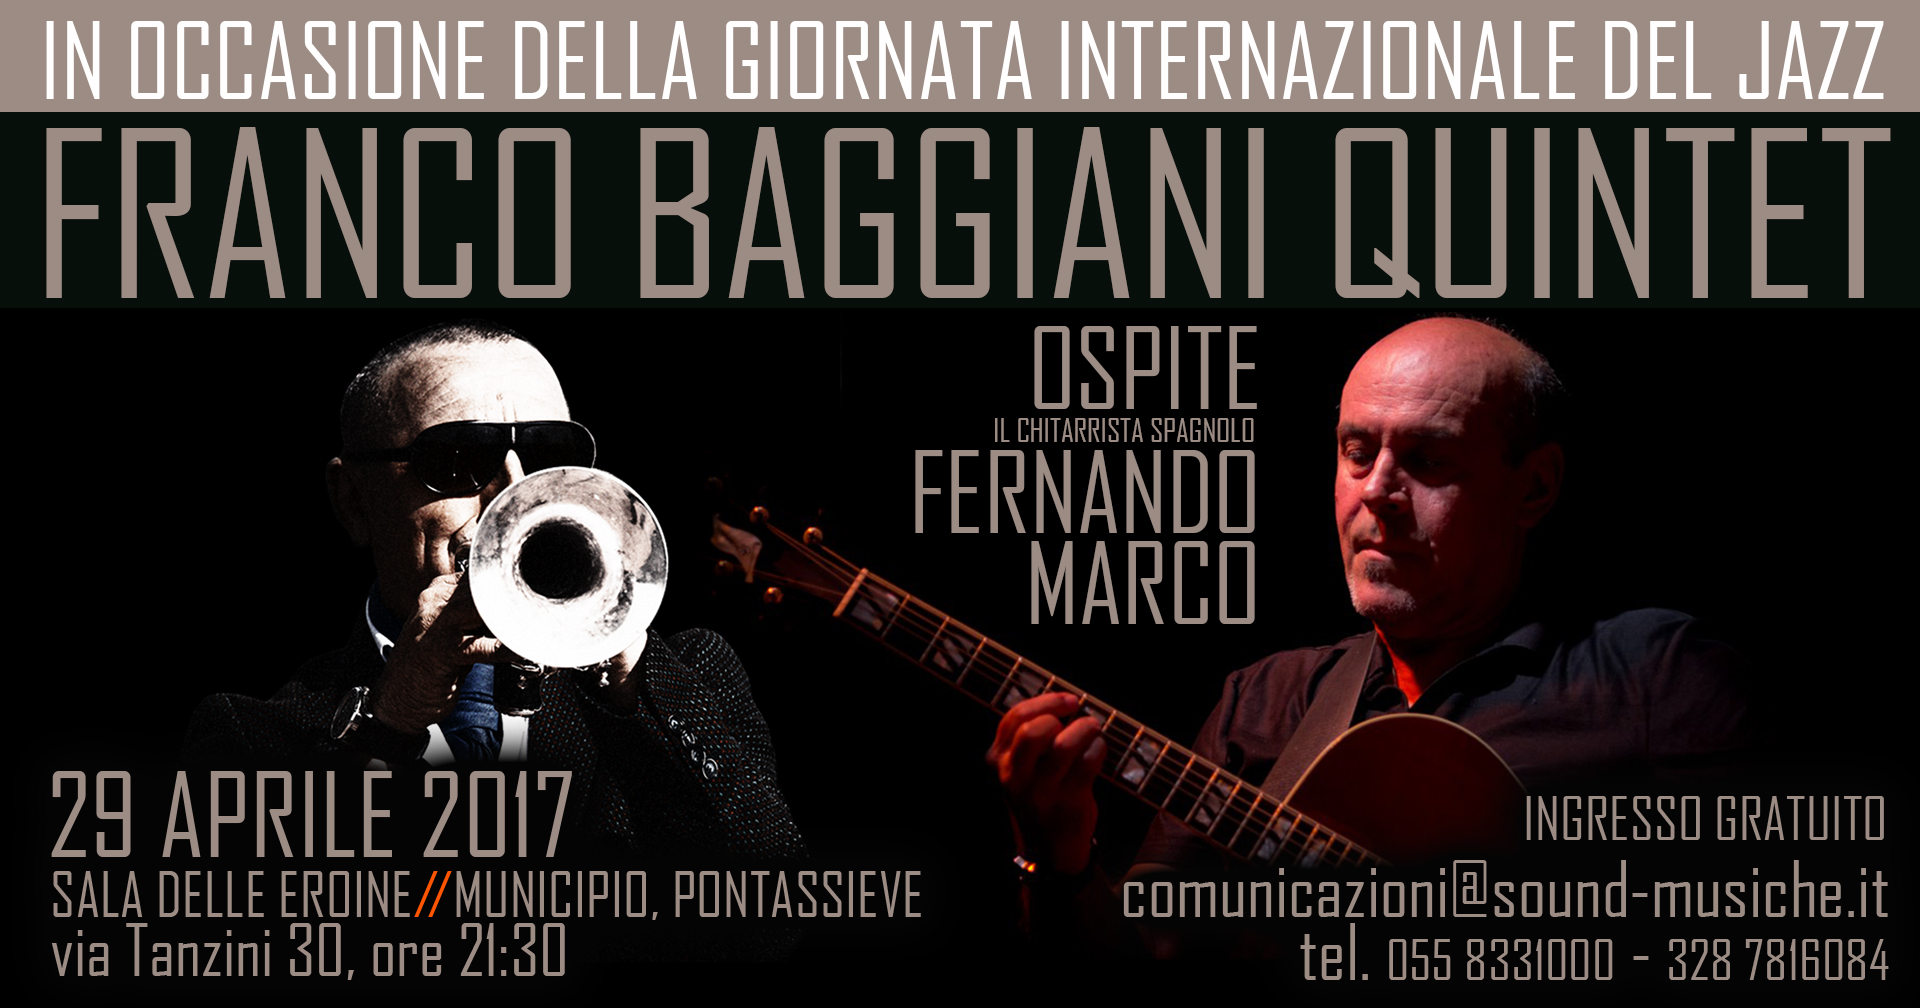 Franco Baggiani quintet ospite Fernando Marco Sabato 29 Aprile Sala delle Eroine Municipio Pontassieve ore 21:30